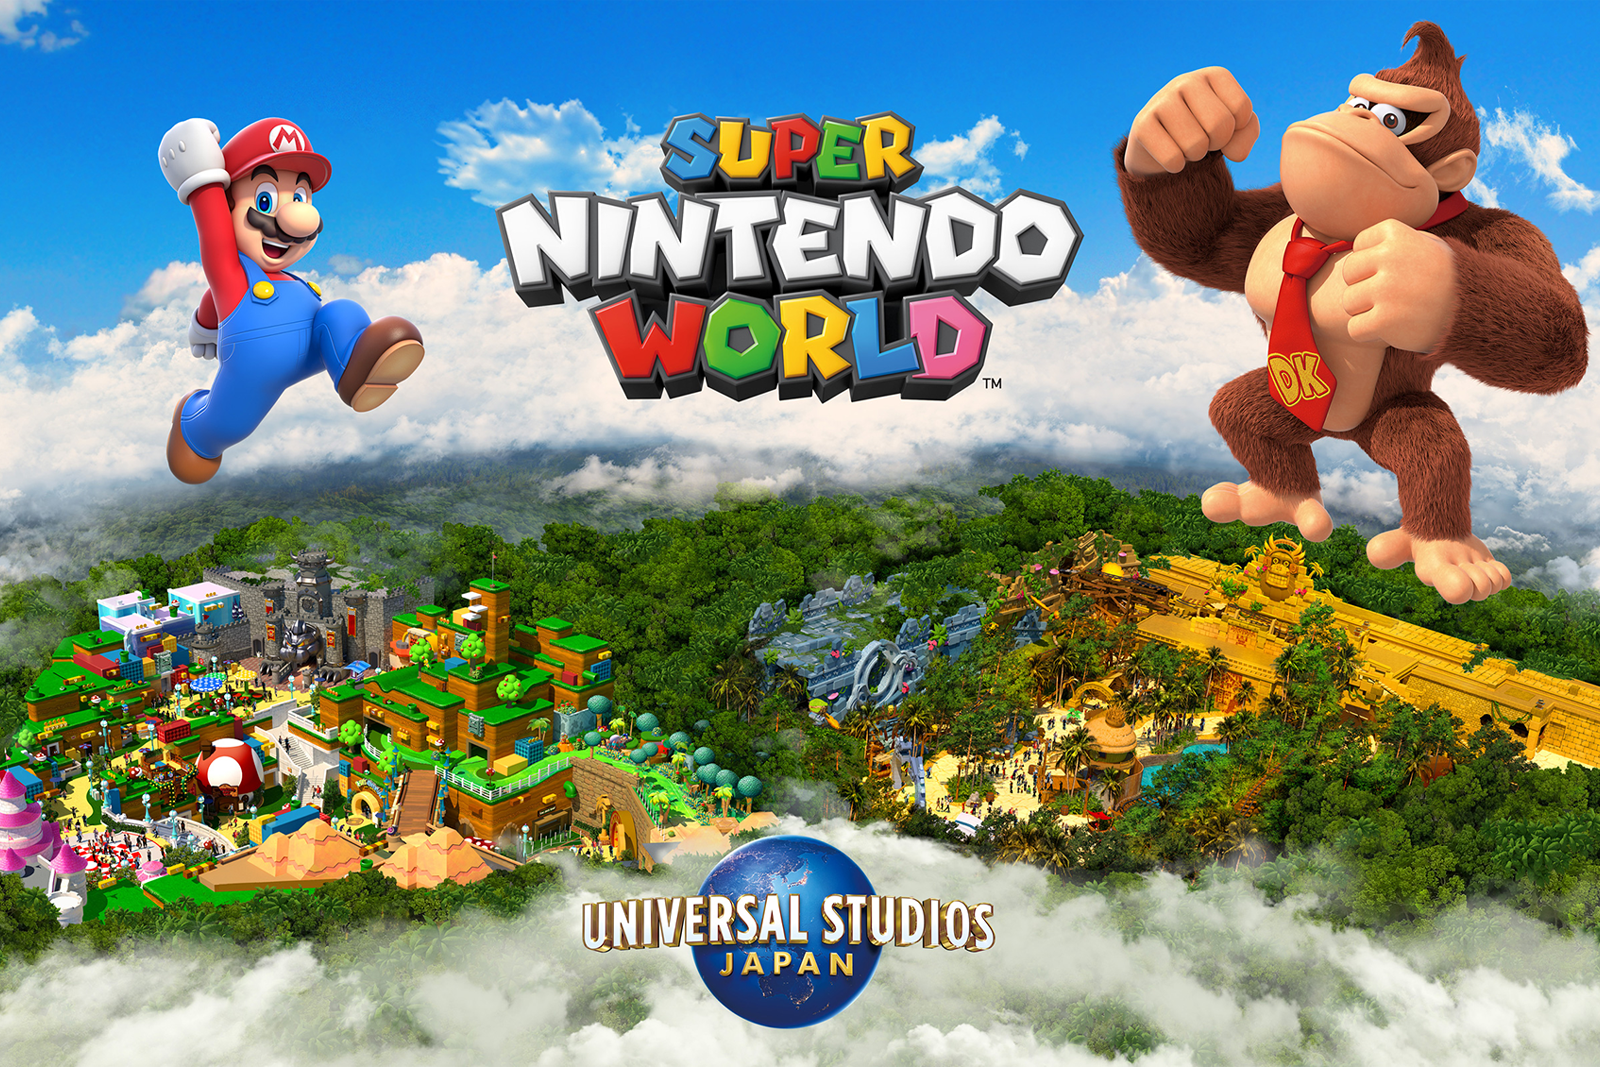 Super Nintendo World expanding with Donkey Kong zone photo 1